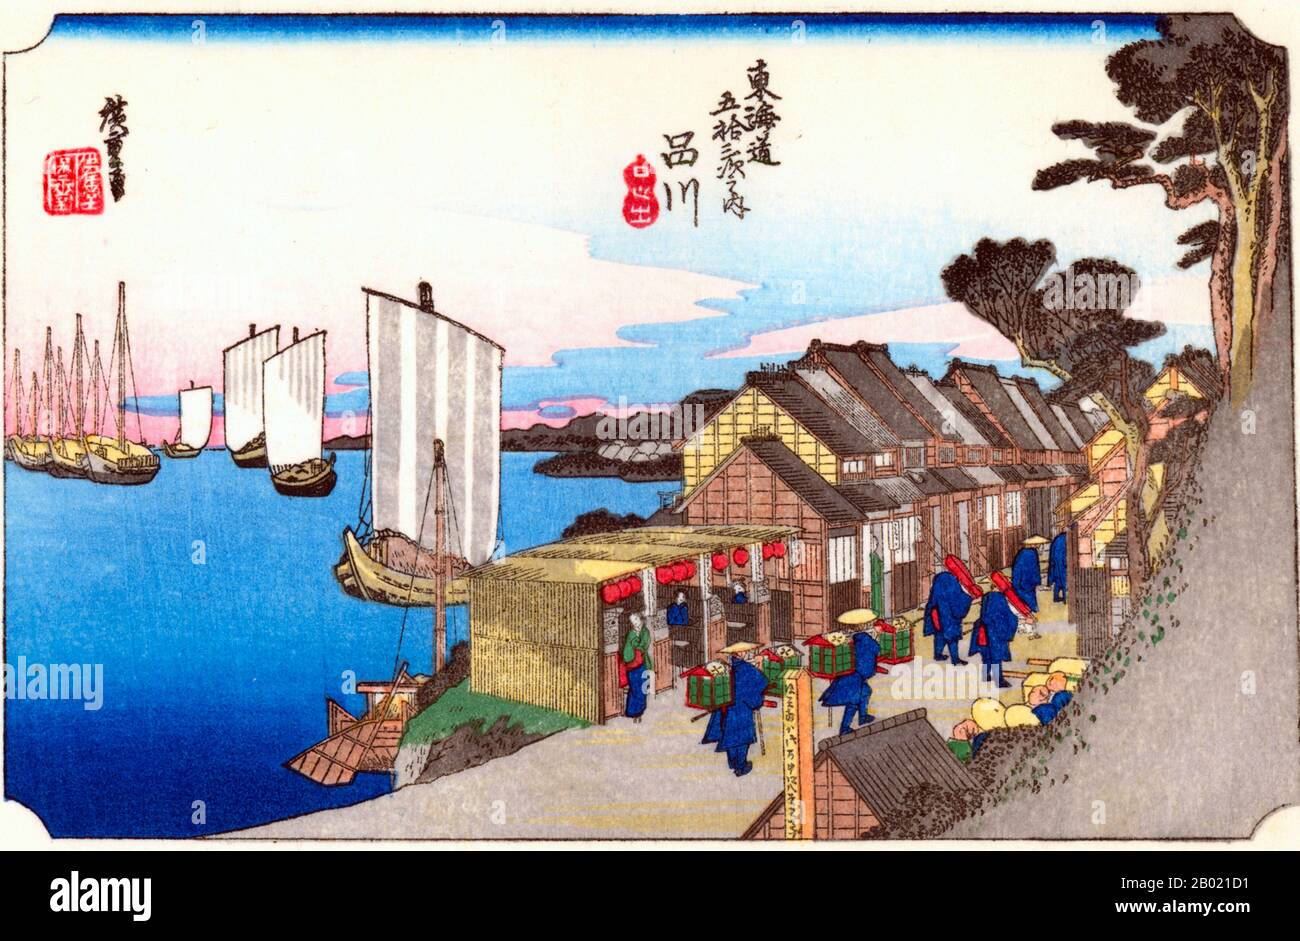 Shinagawa: Una strada di case che si affacciano sulla riva del mare, e la coda di una processione di daimyo che la attraversa; dietro le case navi ormeggiate nella baia. Essendo la prima stazione sull'autostrada, Shinagawa era intronzata da viaggiatori che venivano e venivano. La strada era fiancheggiata da numerose case di tè, ristoranti e locali di intrattenimento. La baia, vista nella foto di Hiroshige, è stata reclamata e ora fa parte di Tokyo. Utagawa Hiroshige (歌川 広重, 1797 – 12 ottobre 1858) è stato un . Fu anche chiamato Andō Hirosh Foto Stock